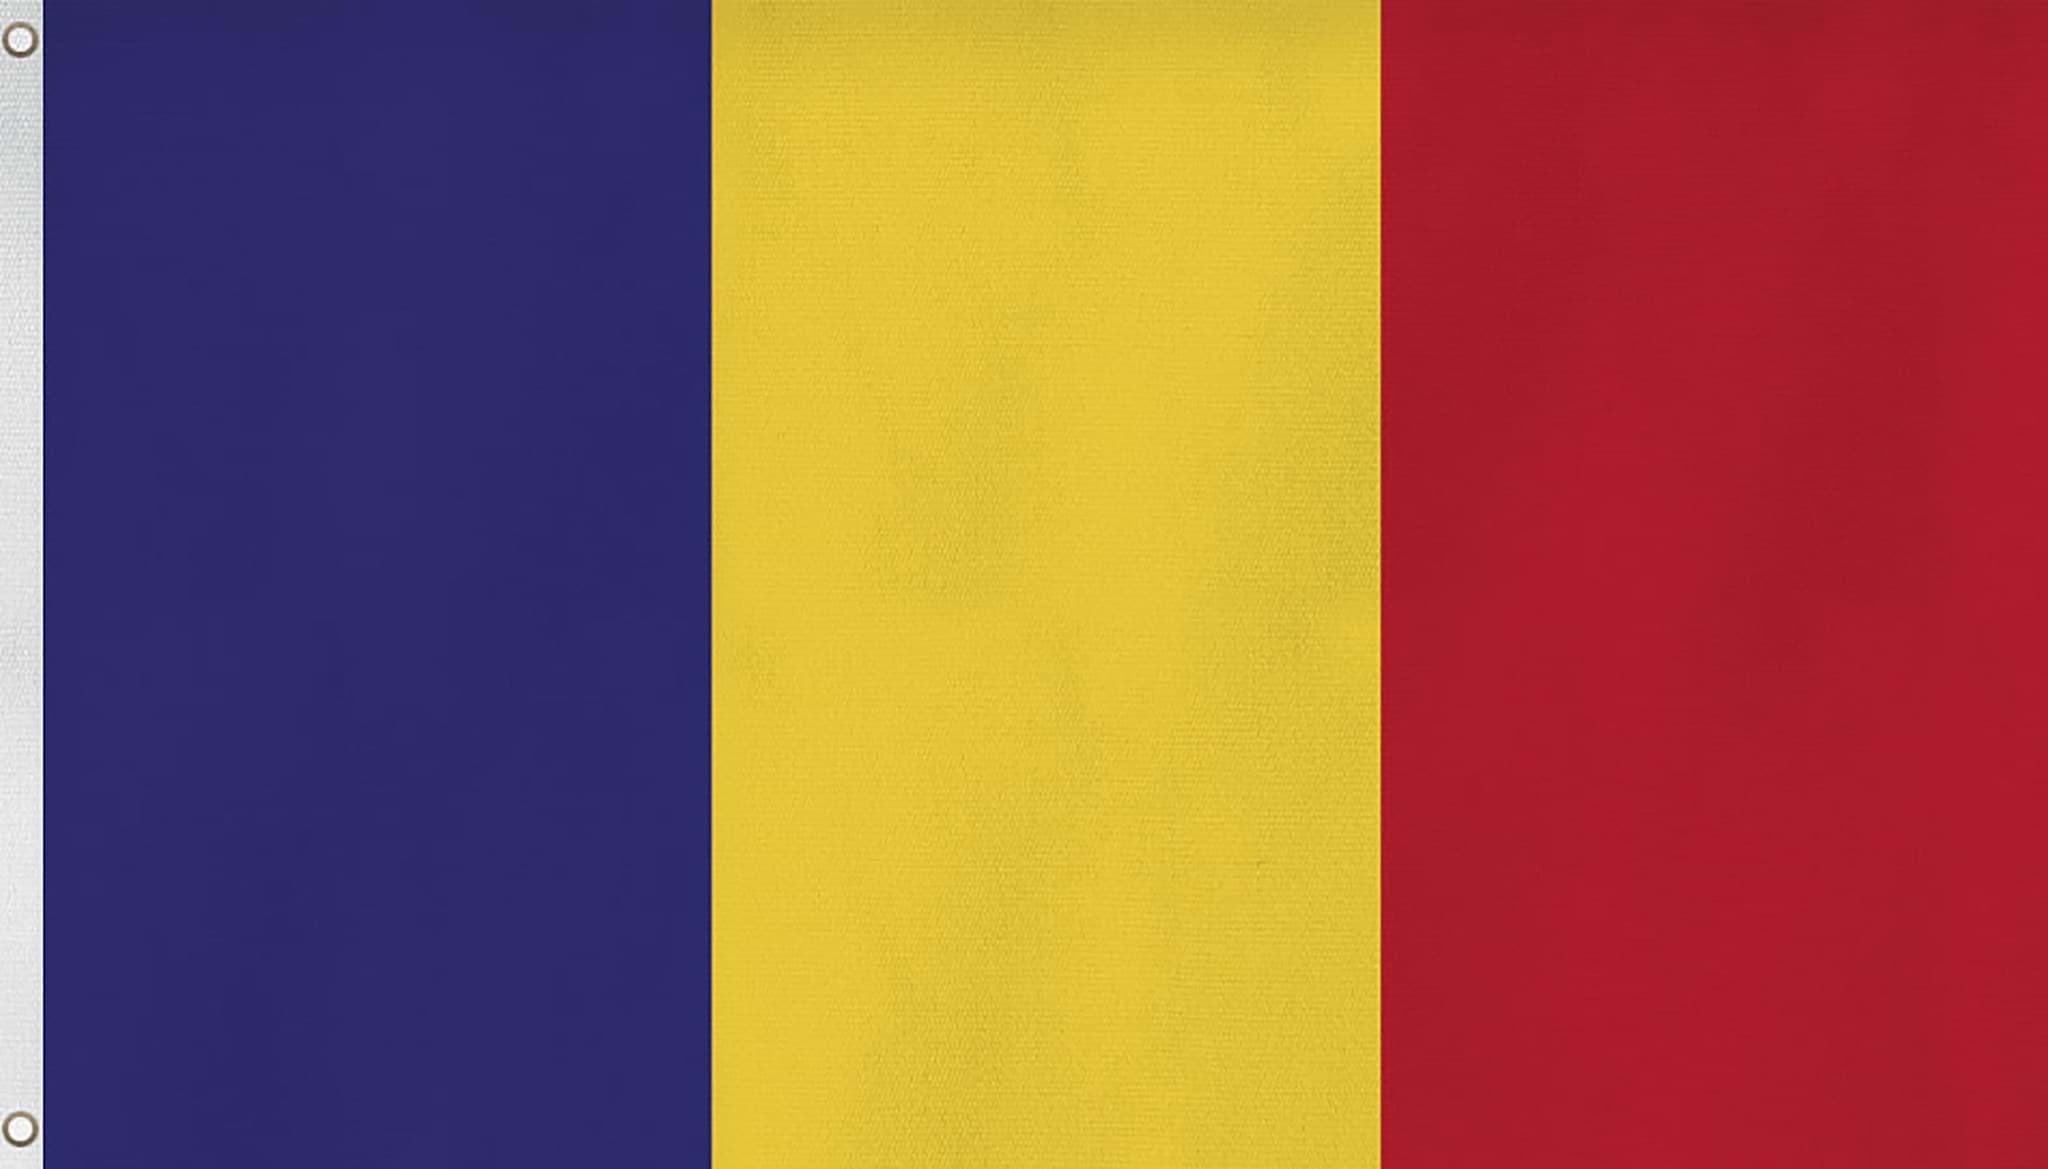 Bild von Fahne Länderflagge 90 cm x 150 cm Rumänien